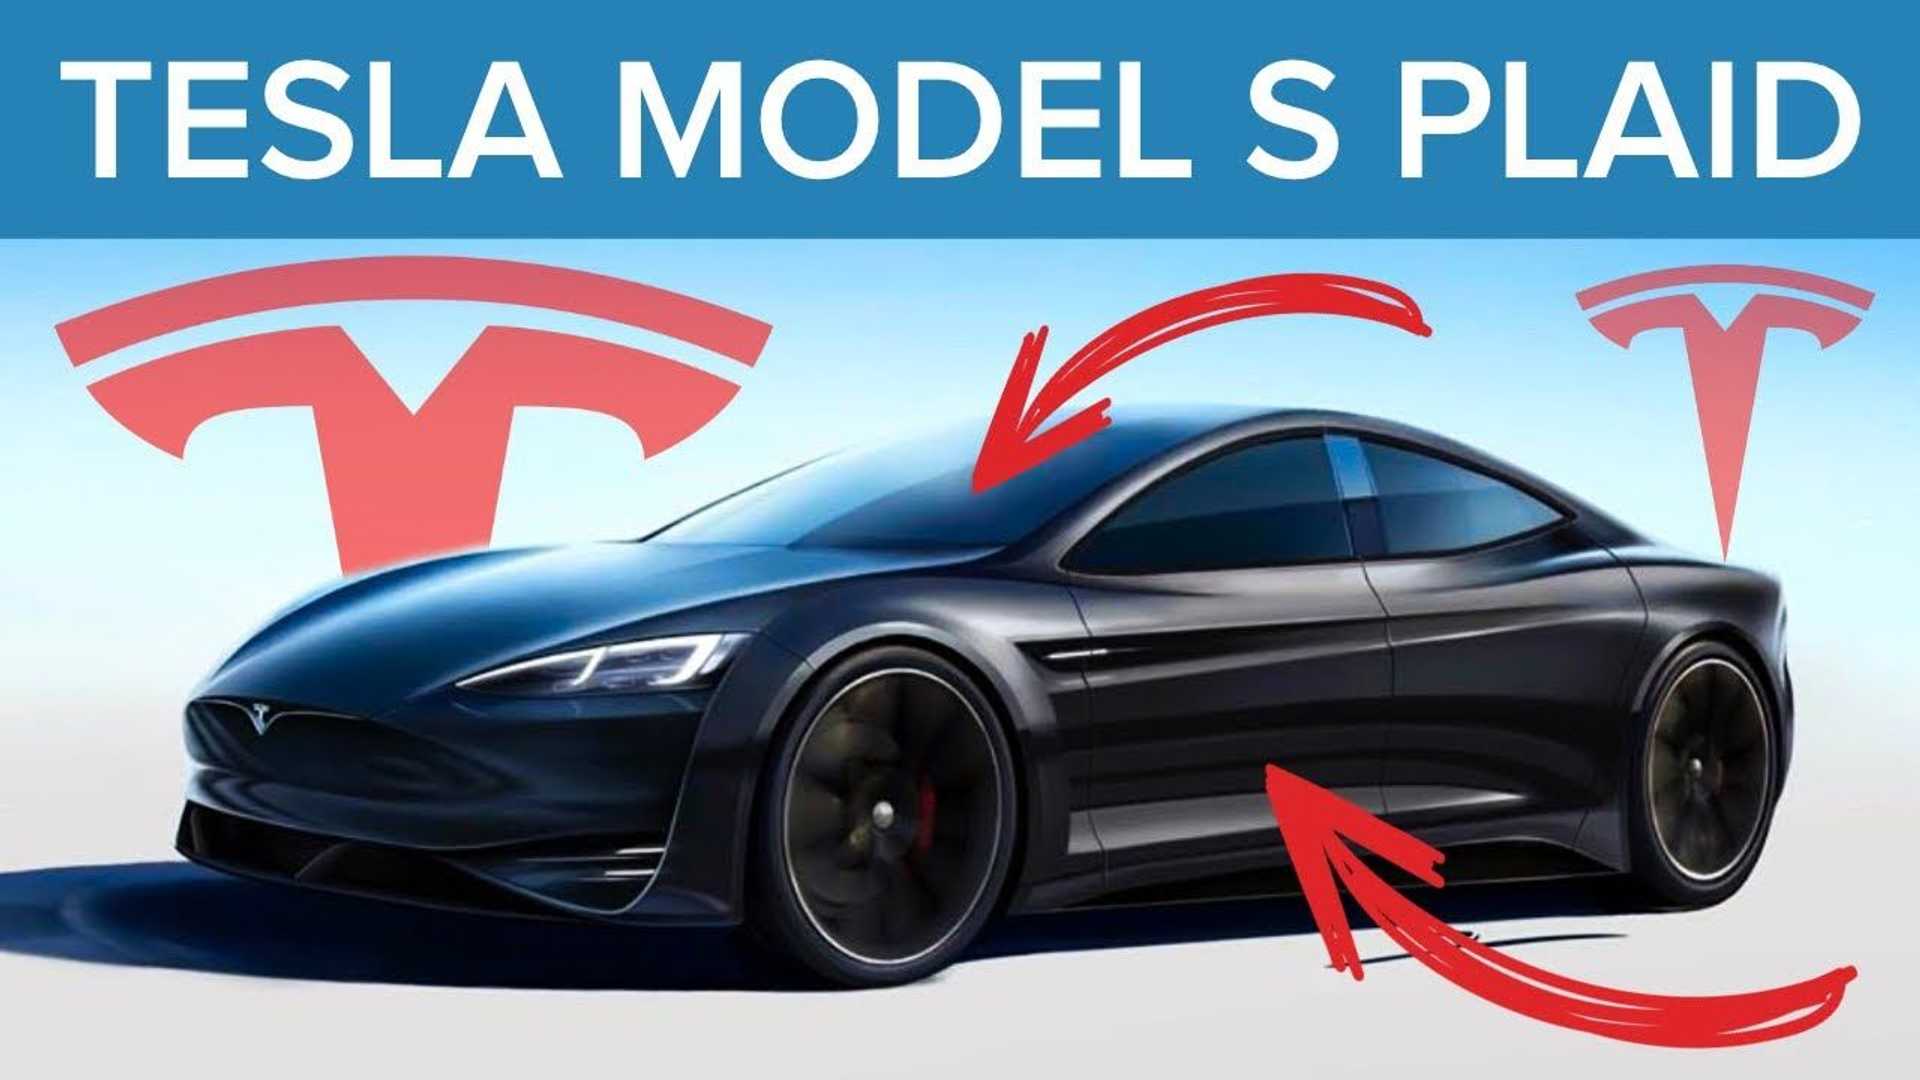 Chiếc xe Model S Plaid của Tesla được coi là “vua EV” hiện nay (Ảnh: Internet)